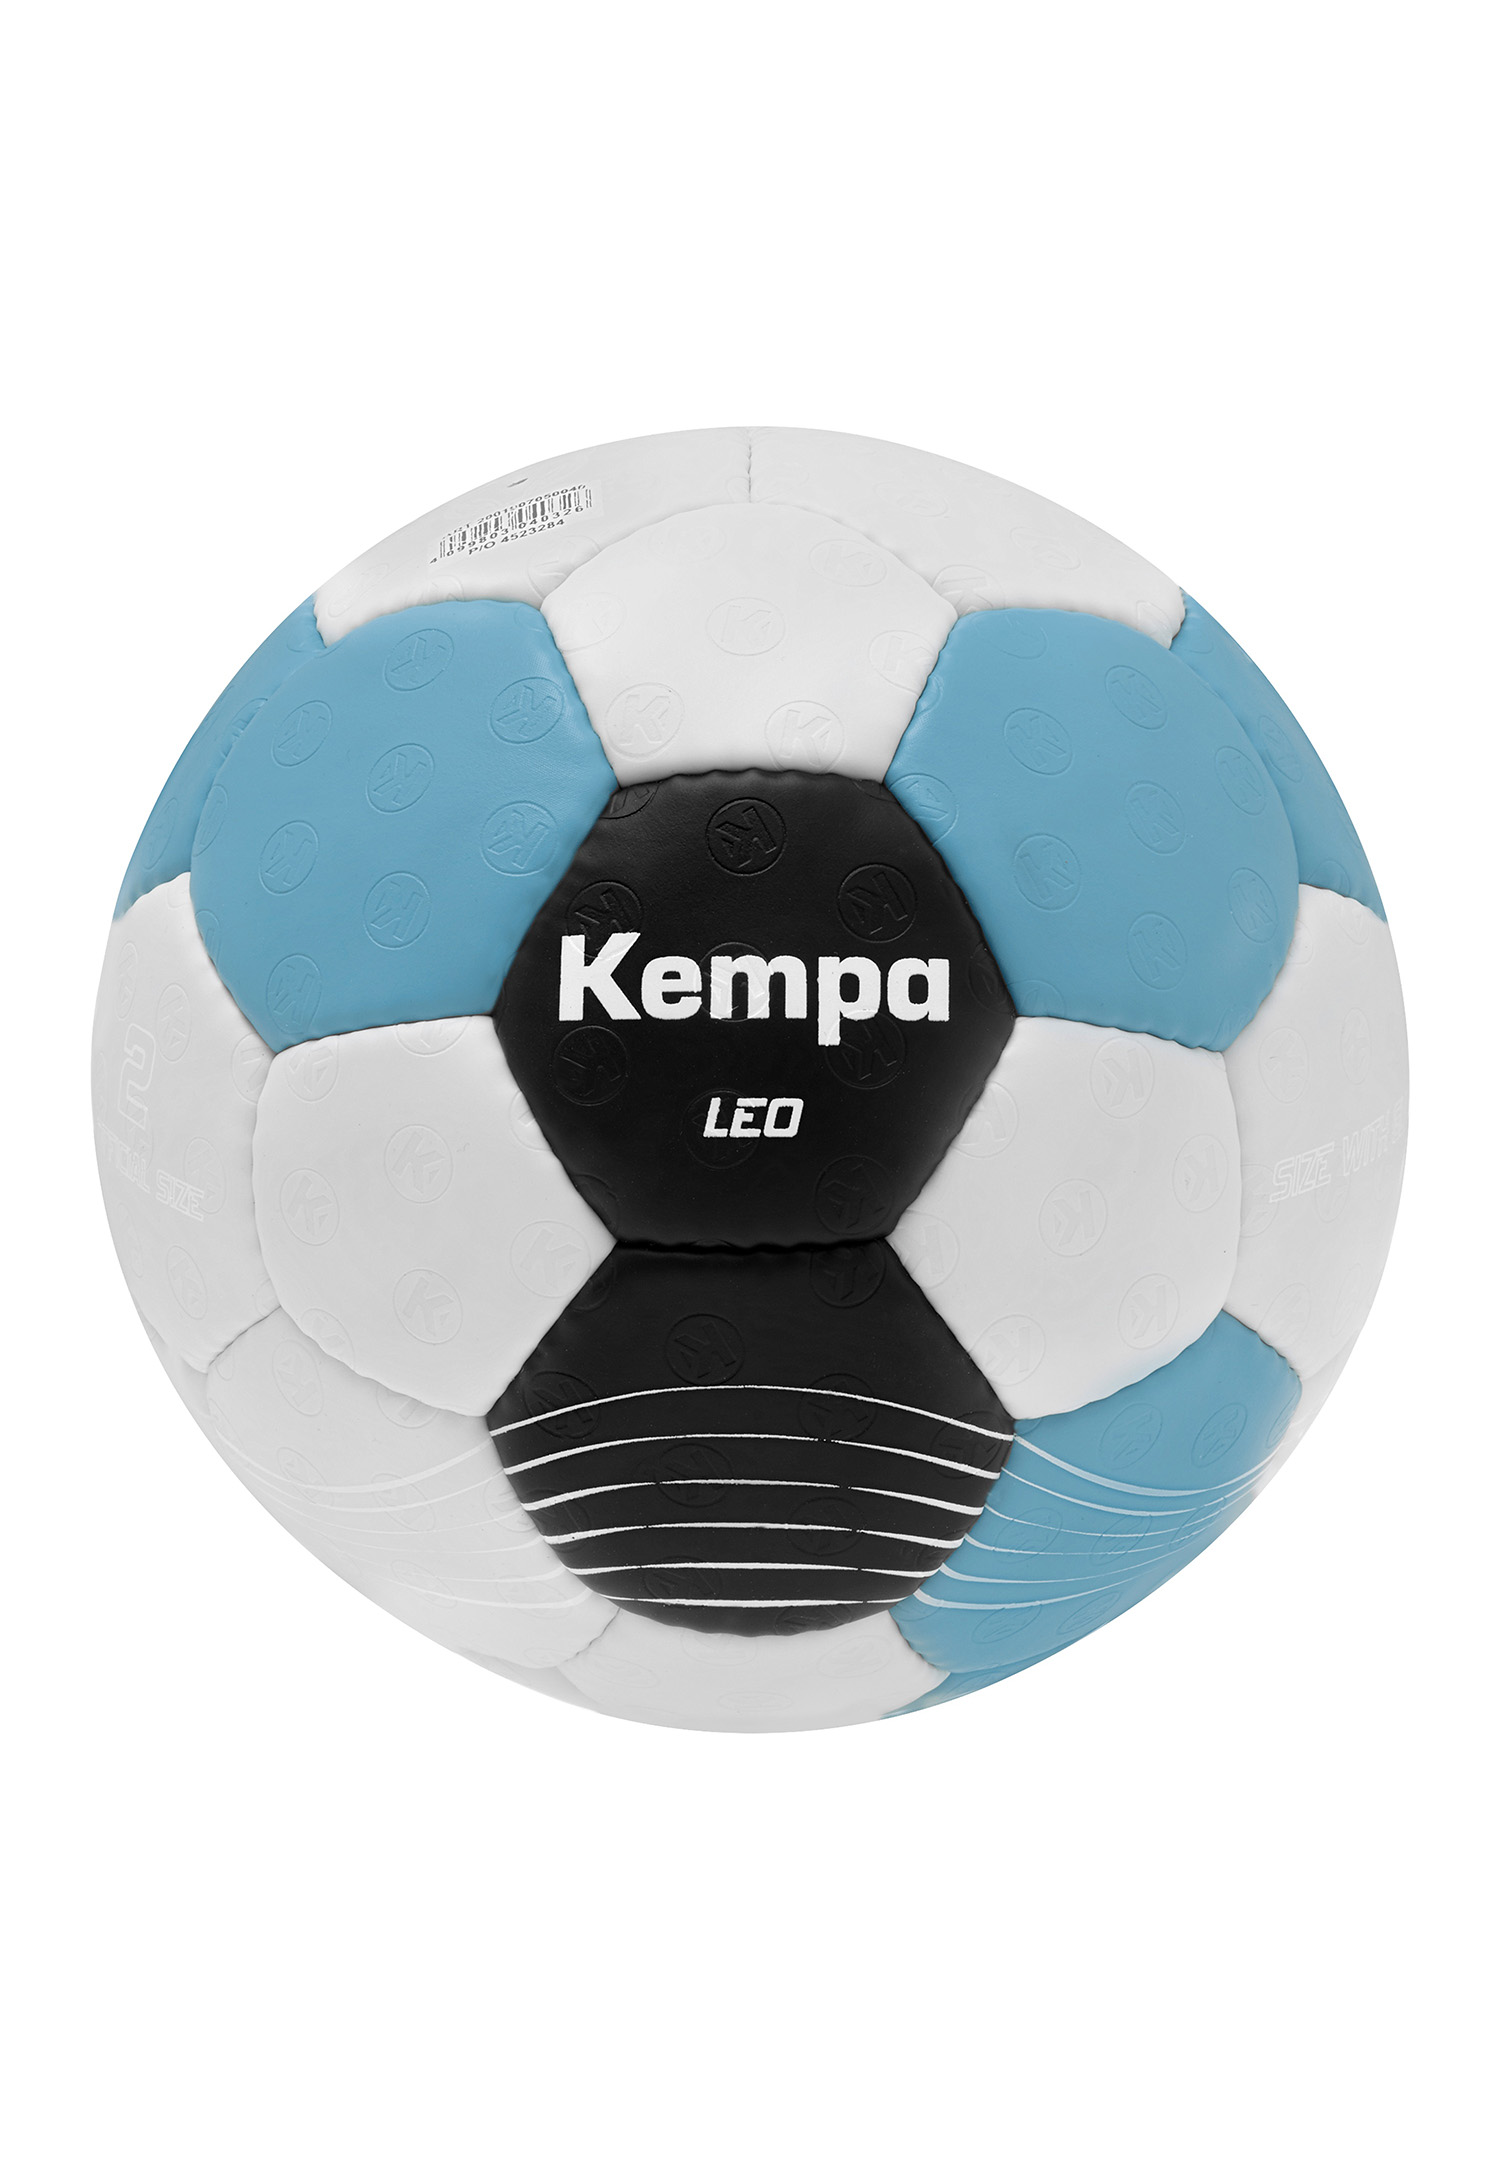 Kempa Handball Leo Size 1 200190705 grey/black